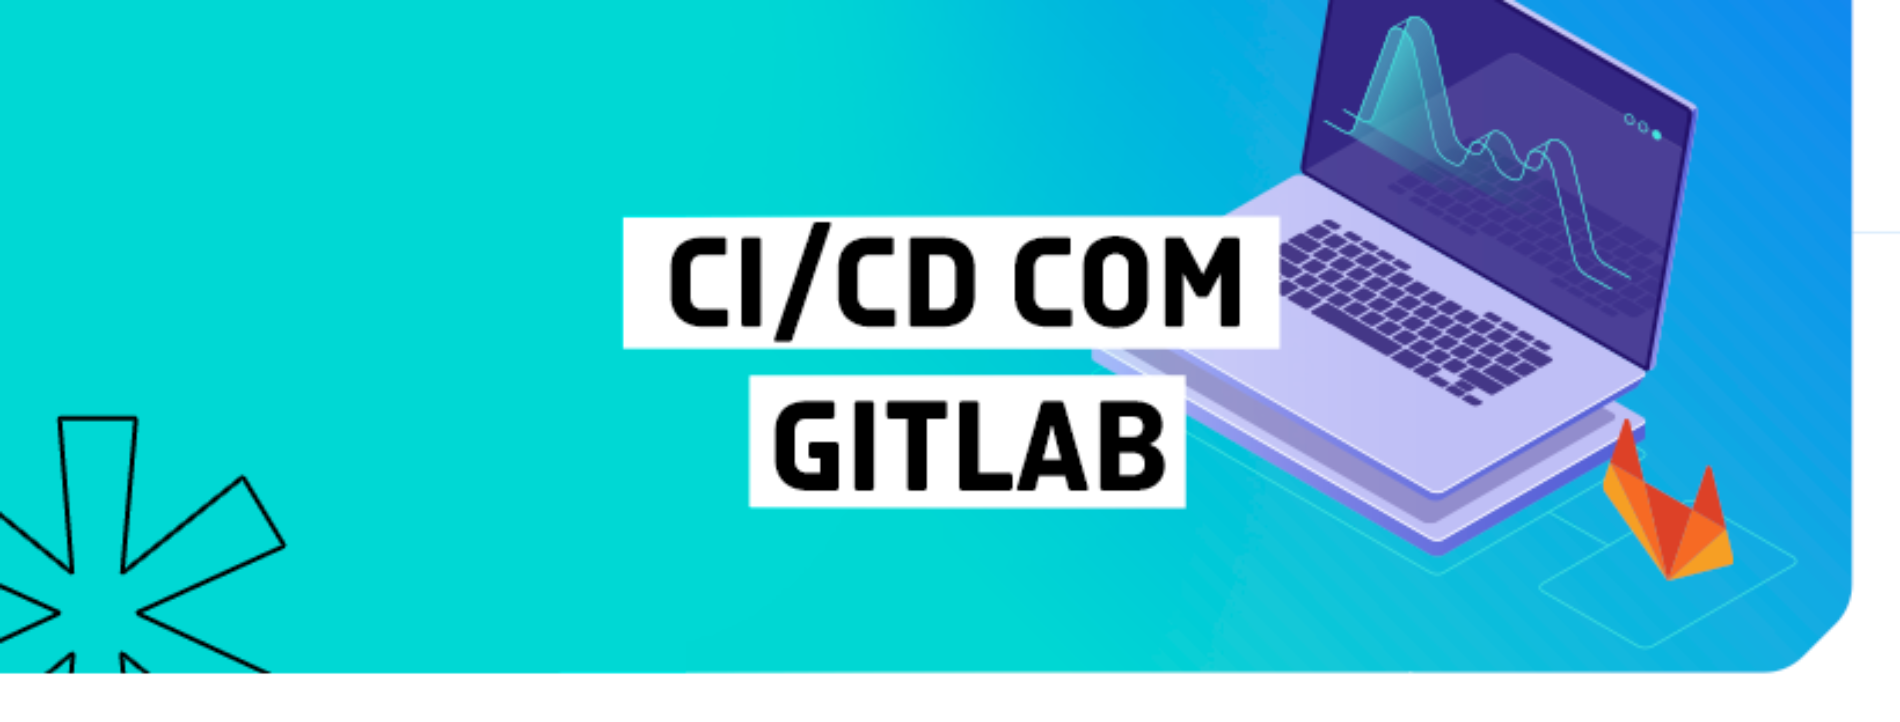 CI/CD com Gitlab